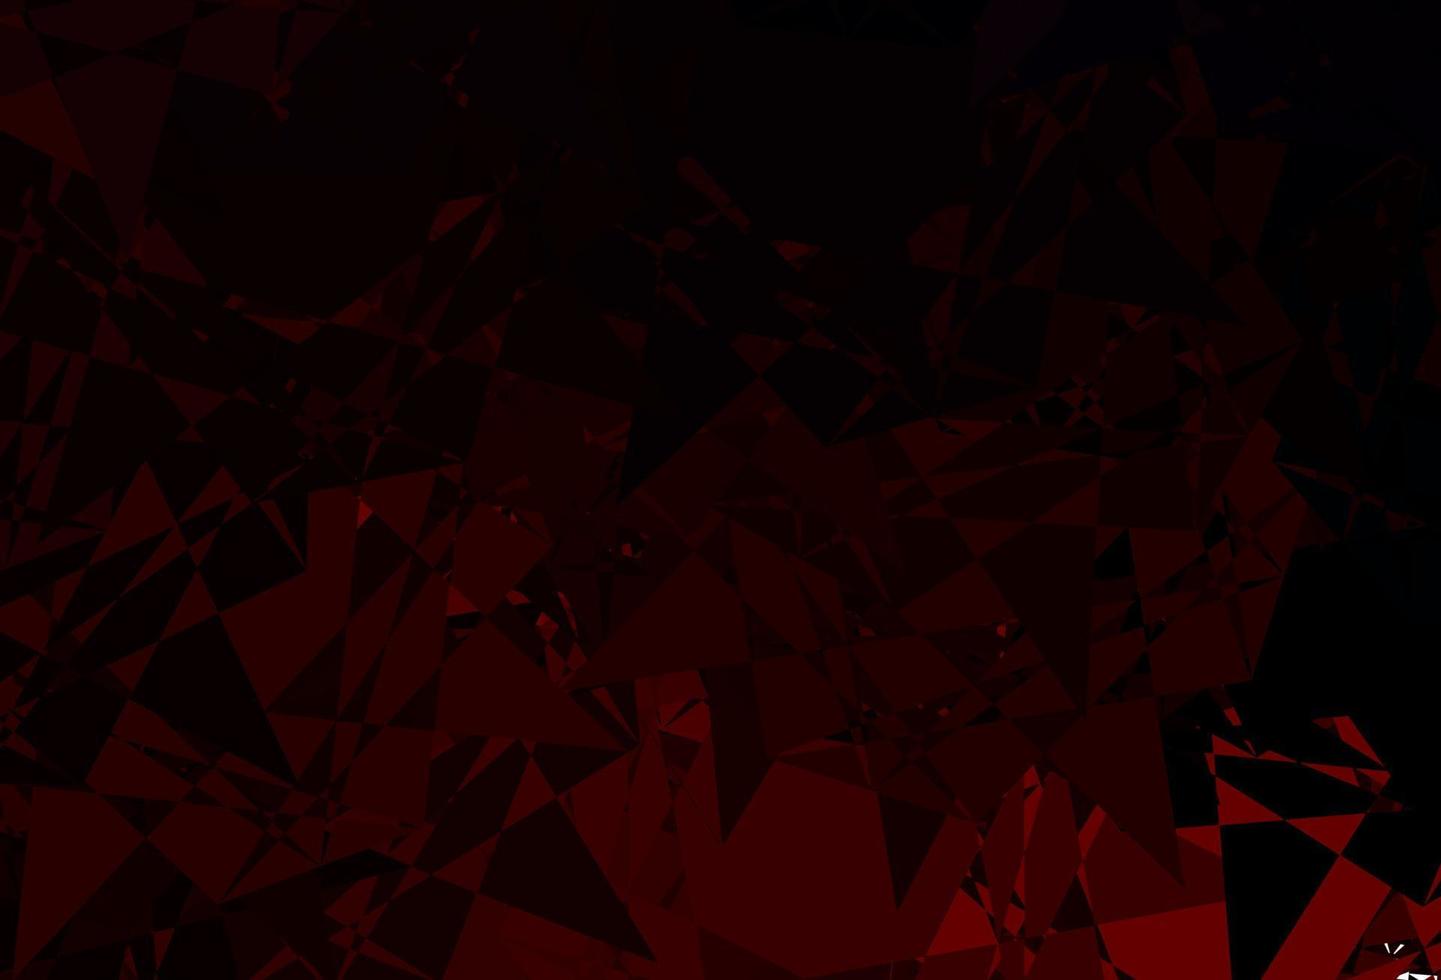 trama vettoriale rosso scuro con triangoli casuali.